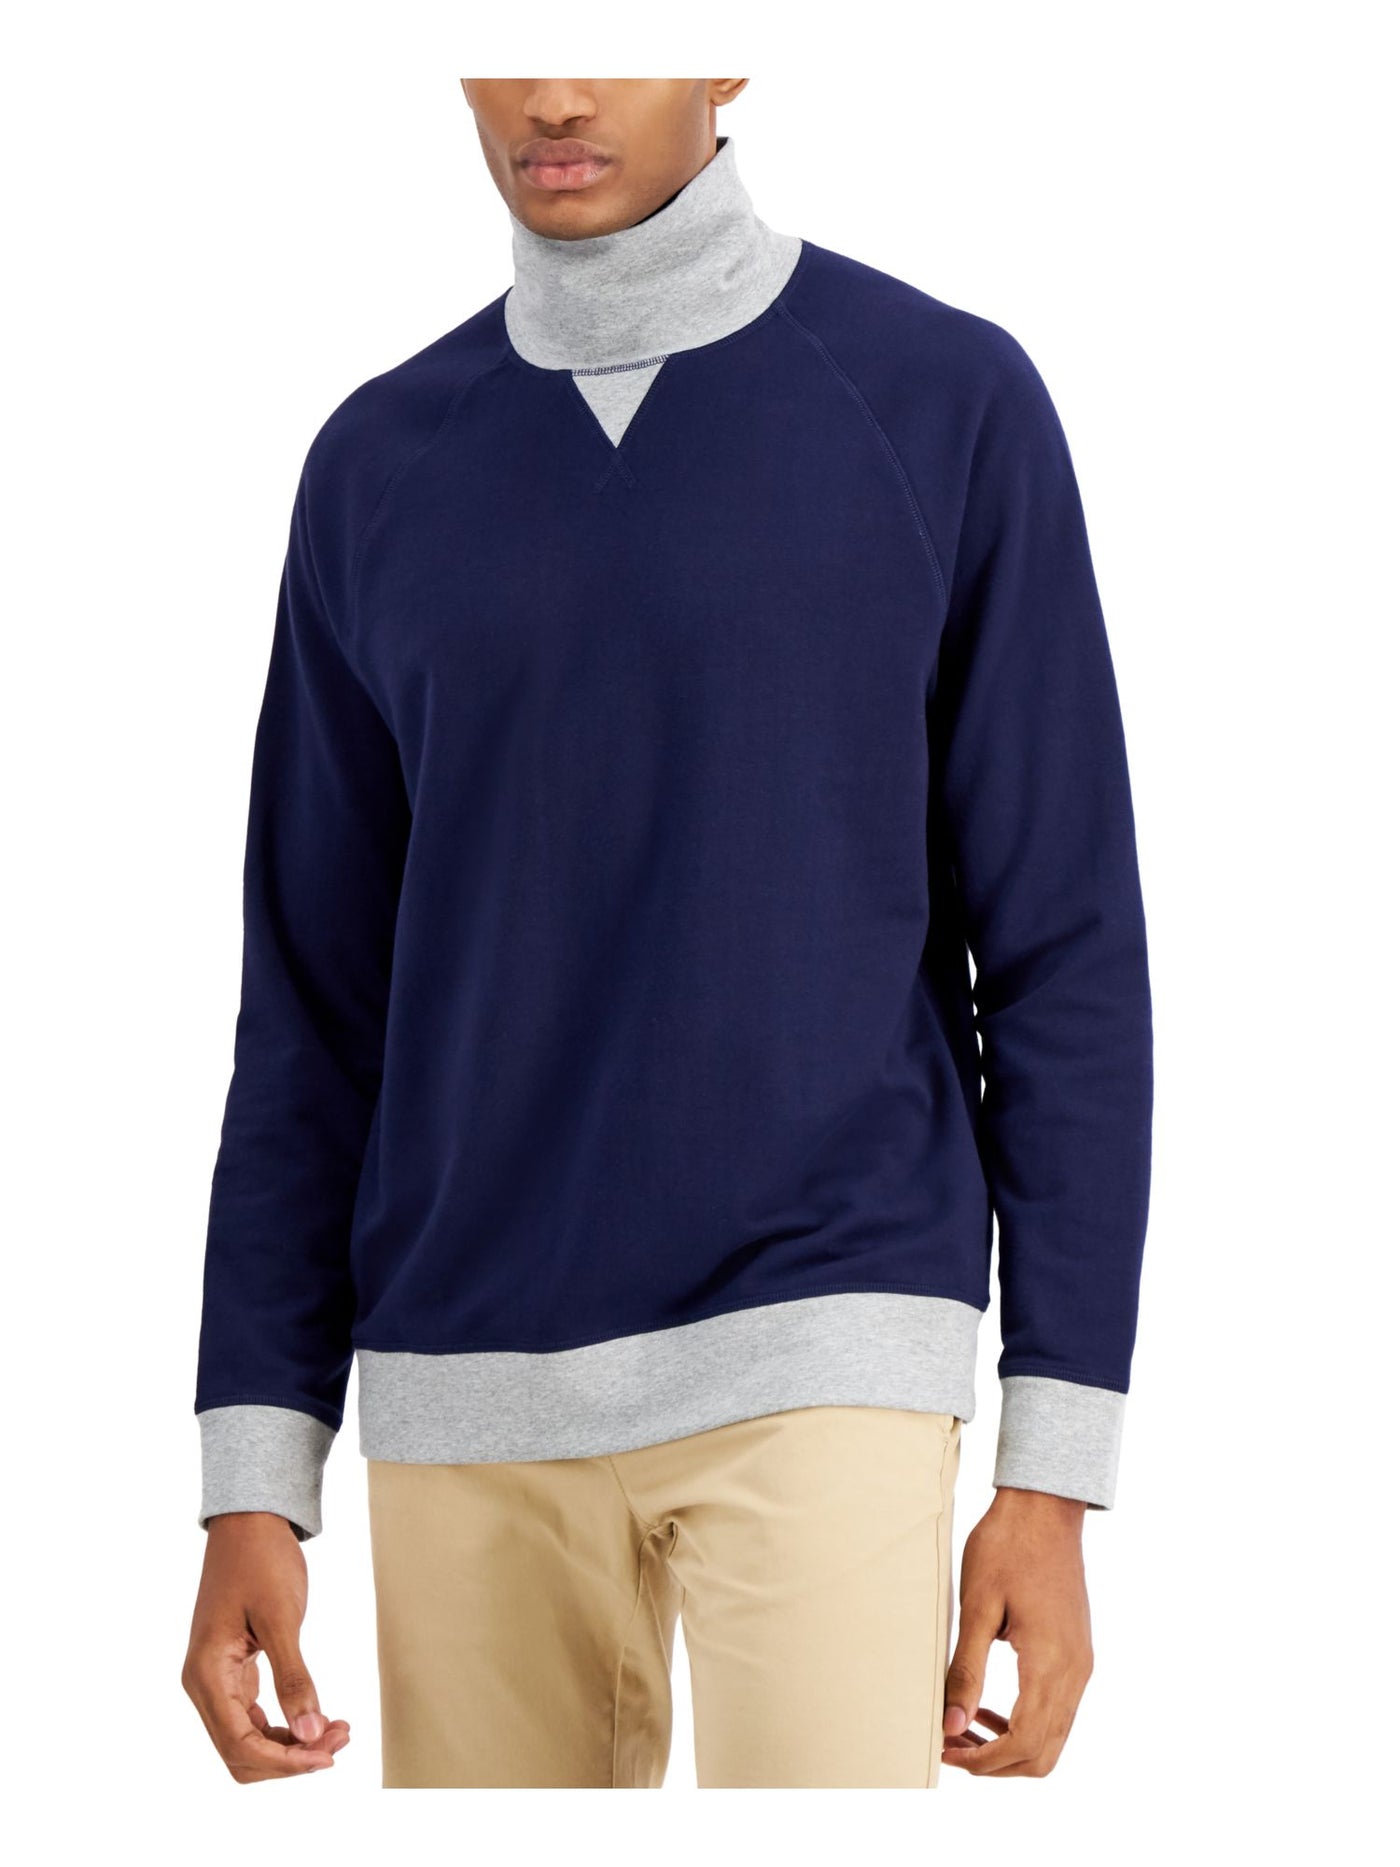 CLUBROOM Mens Navy Color Block Turtle Neck Classic Fit Fleece Sweatshirt M